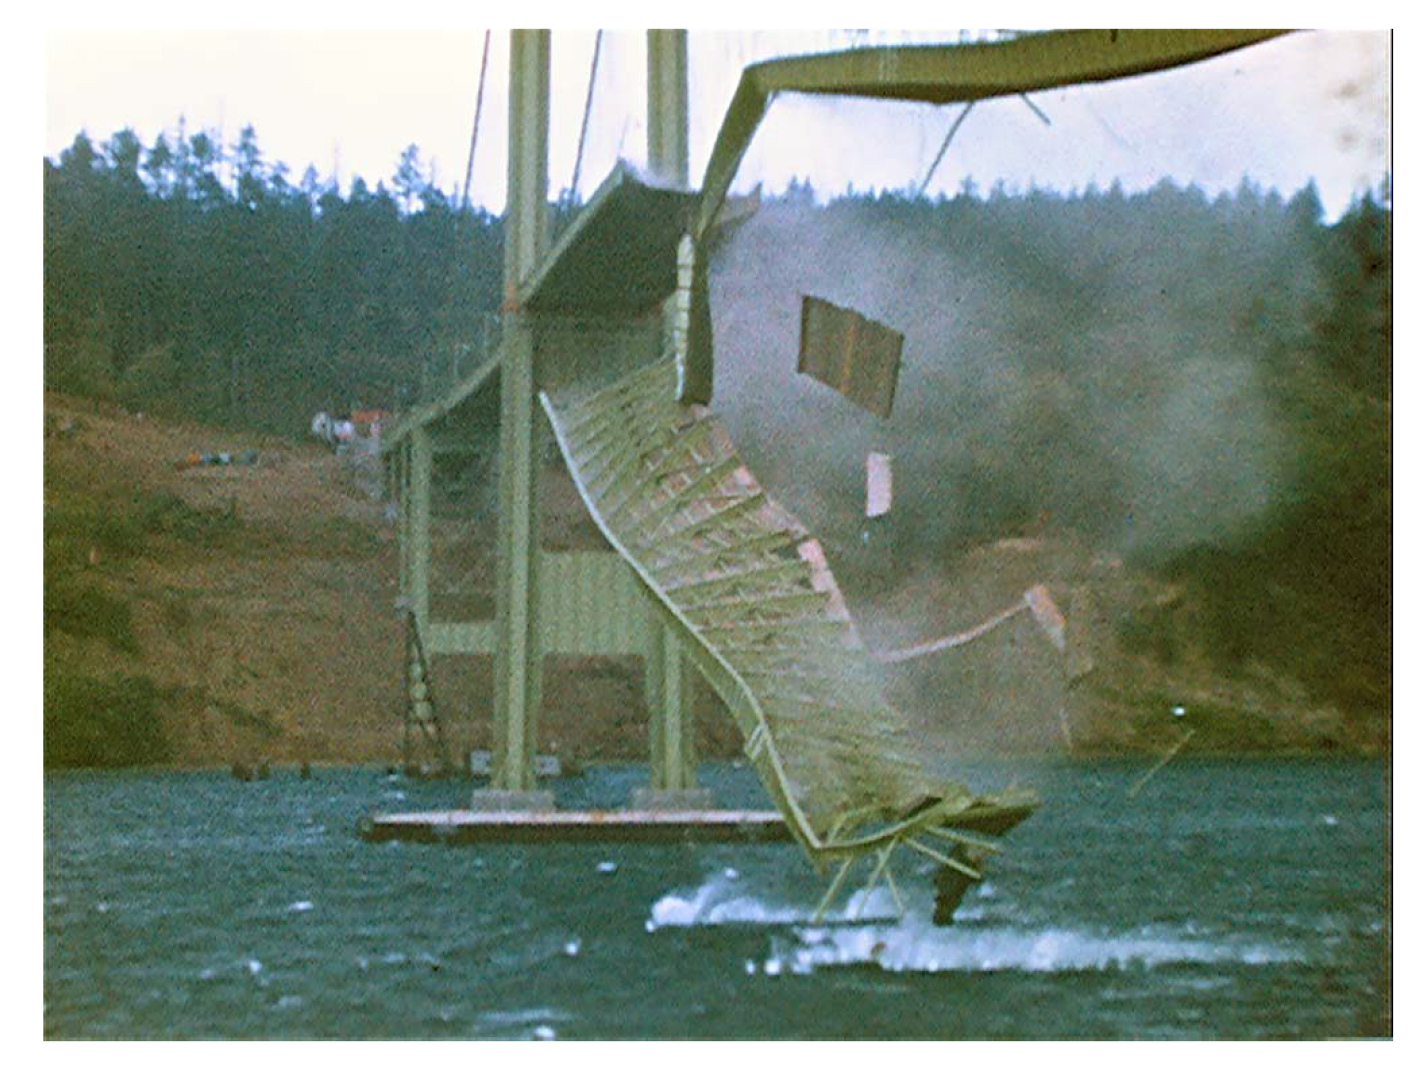 Collapse of Tacoma Narrows Bridge. (Ed Elliott, The Camera Shop, Tacoma WA)